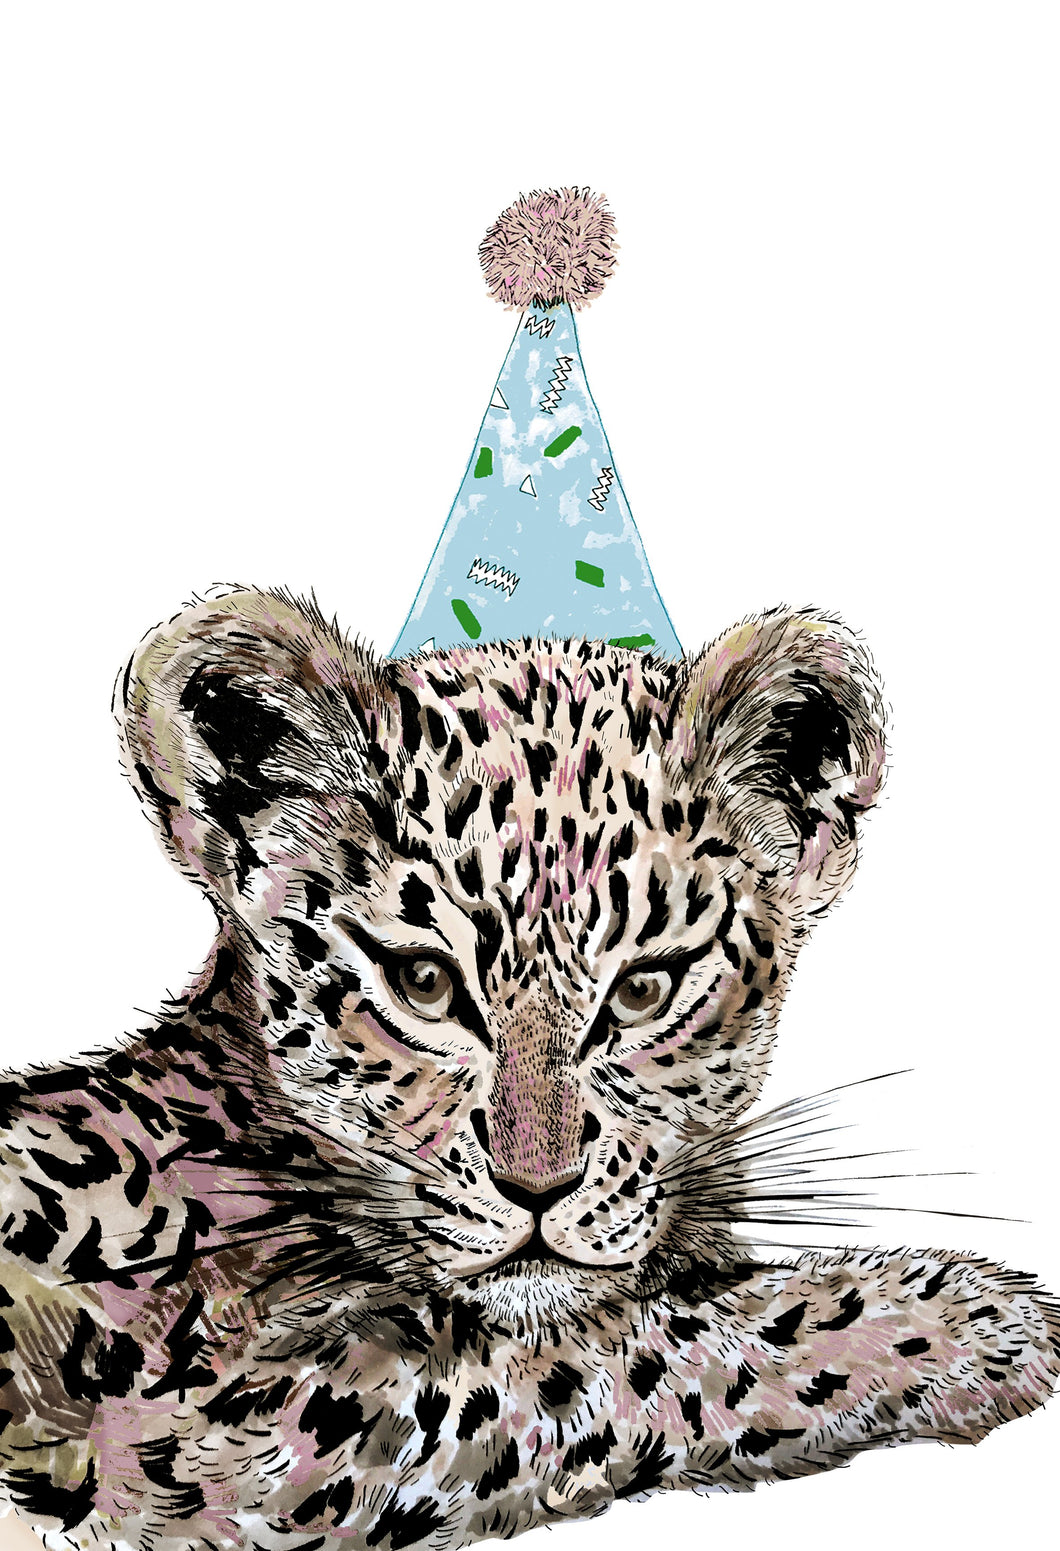 Party Leopard Giclée Print